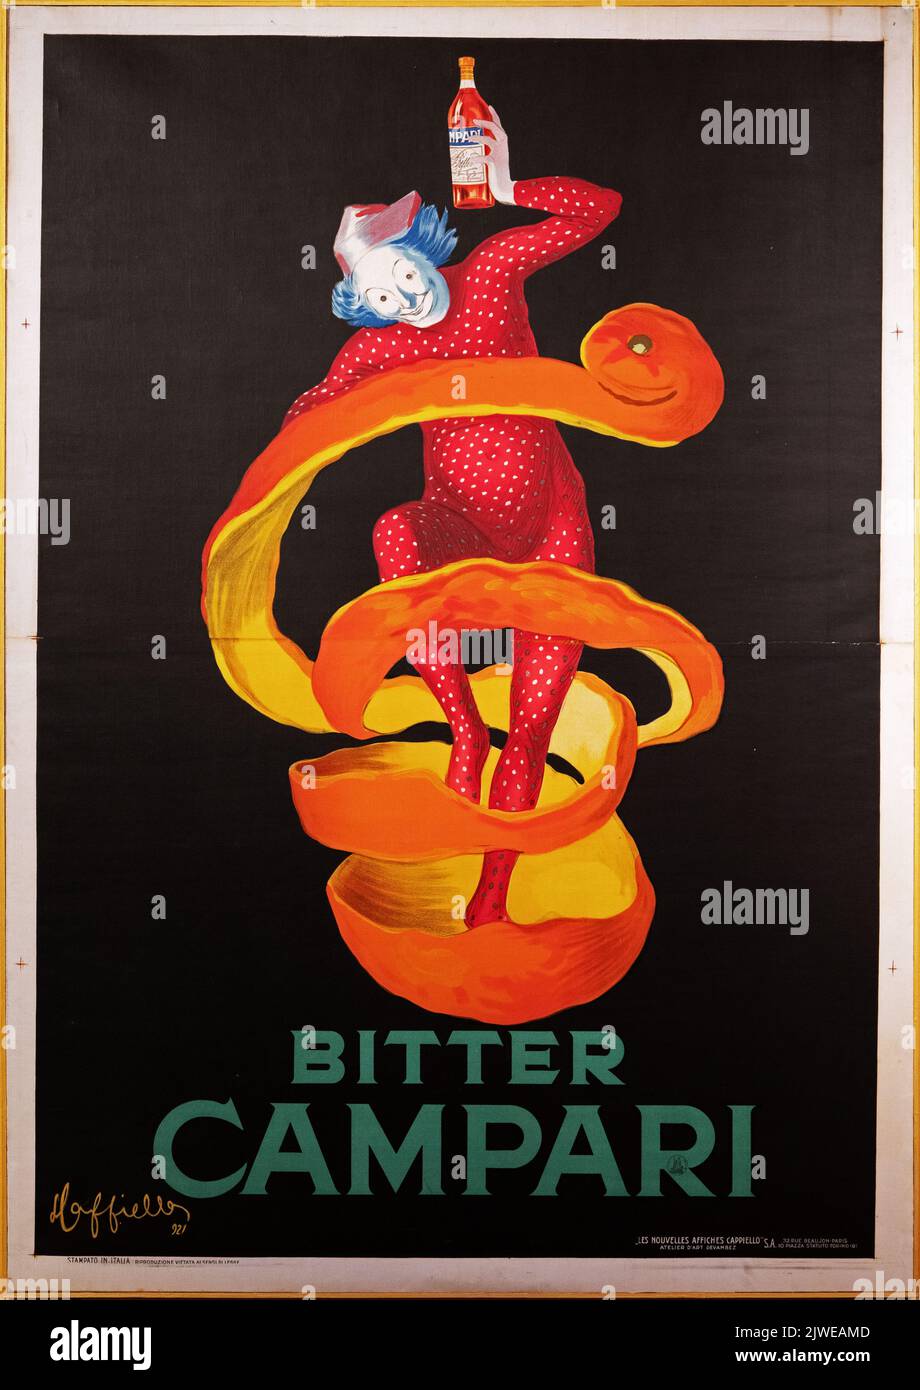 Old nice advertising poster of Bitter Campari. Image taken at the Galleria Campari close to Milan. Stock Photo